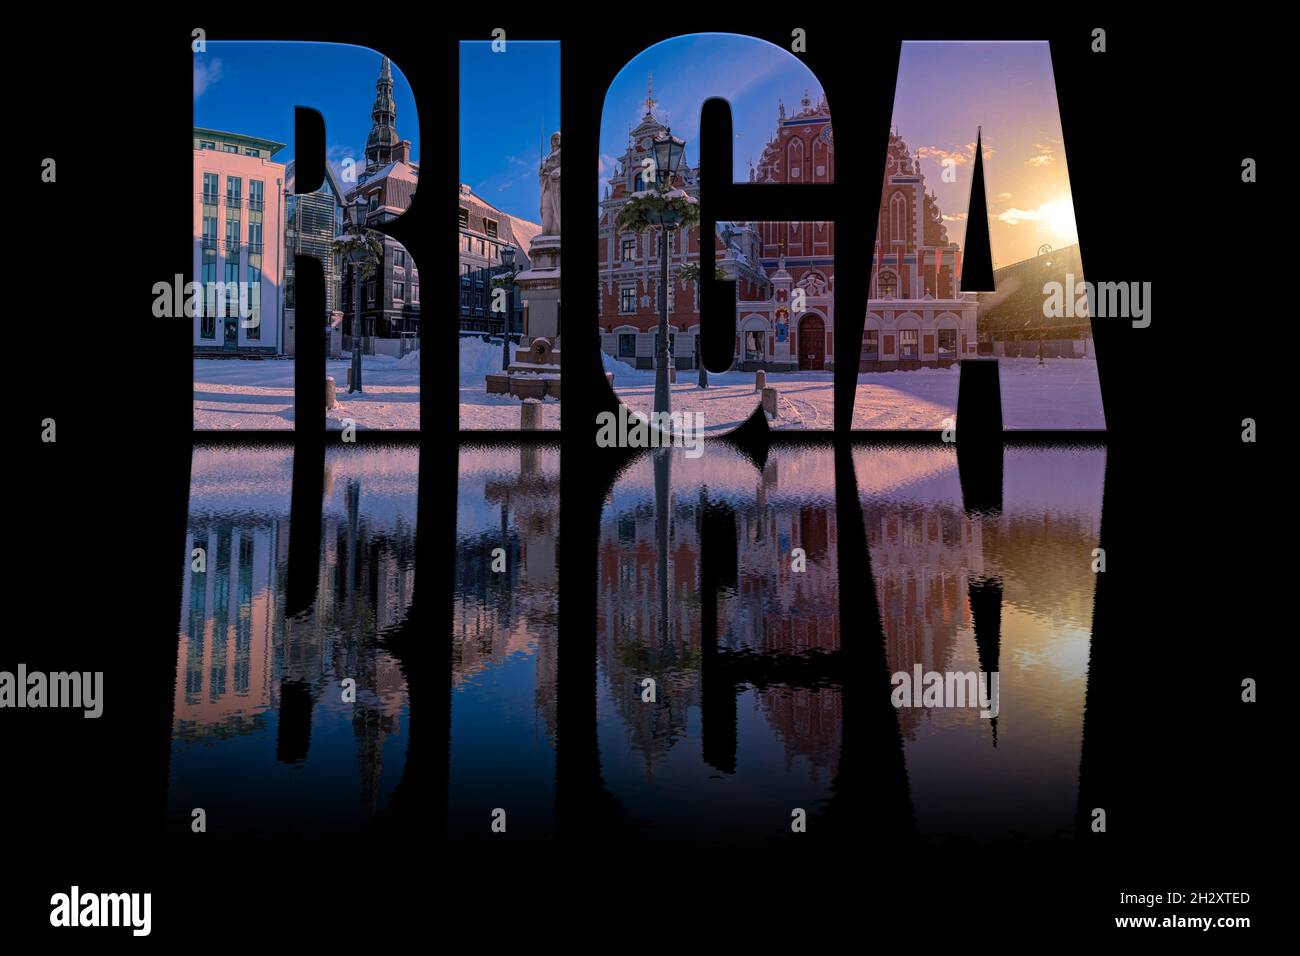 Riga texte composé de la photo de la célèbre Maison des Blackheads et de la statue de Roland sur fond noir avec le texte réfléchissant dans l'eau.Coucher de soleil sur la couverture Banque D'Images